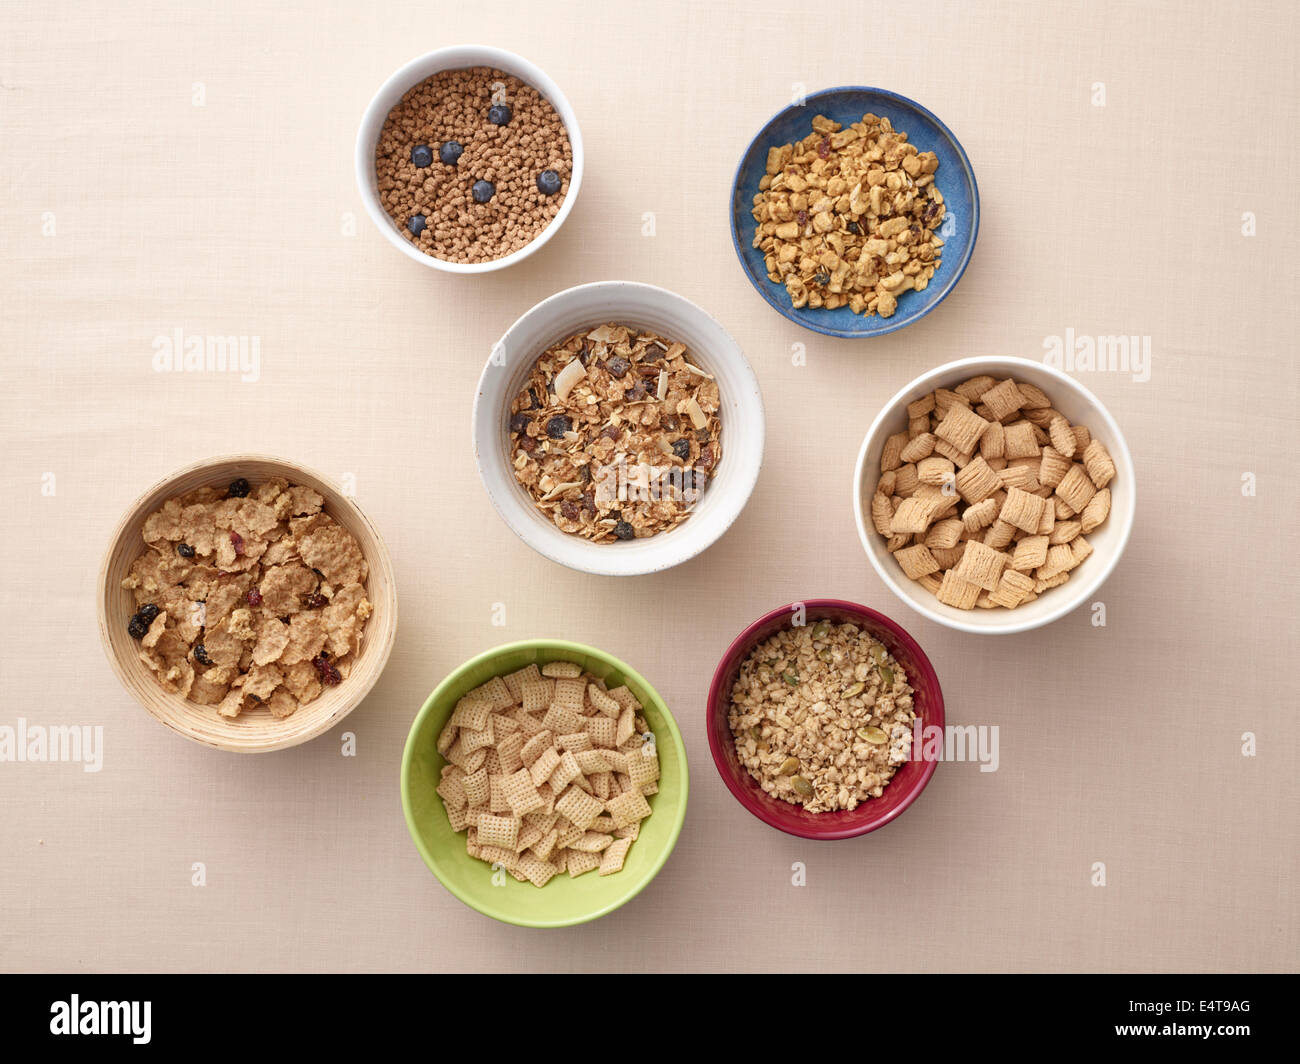 Vista aérea de cuencos de una variedad de cereales sanos, Foto de estudio Foto de stock